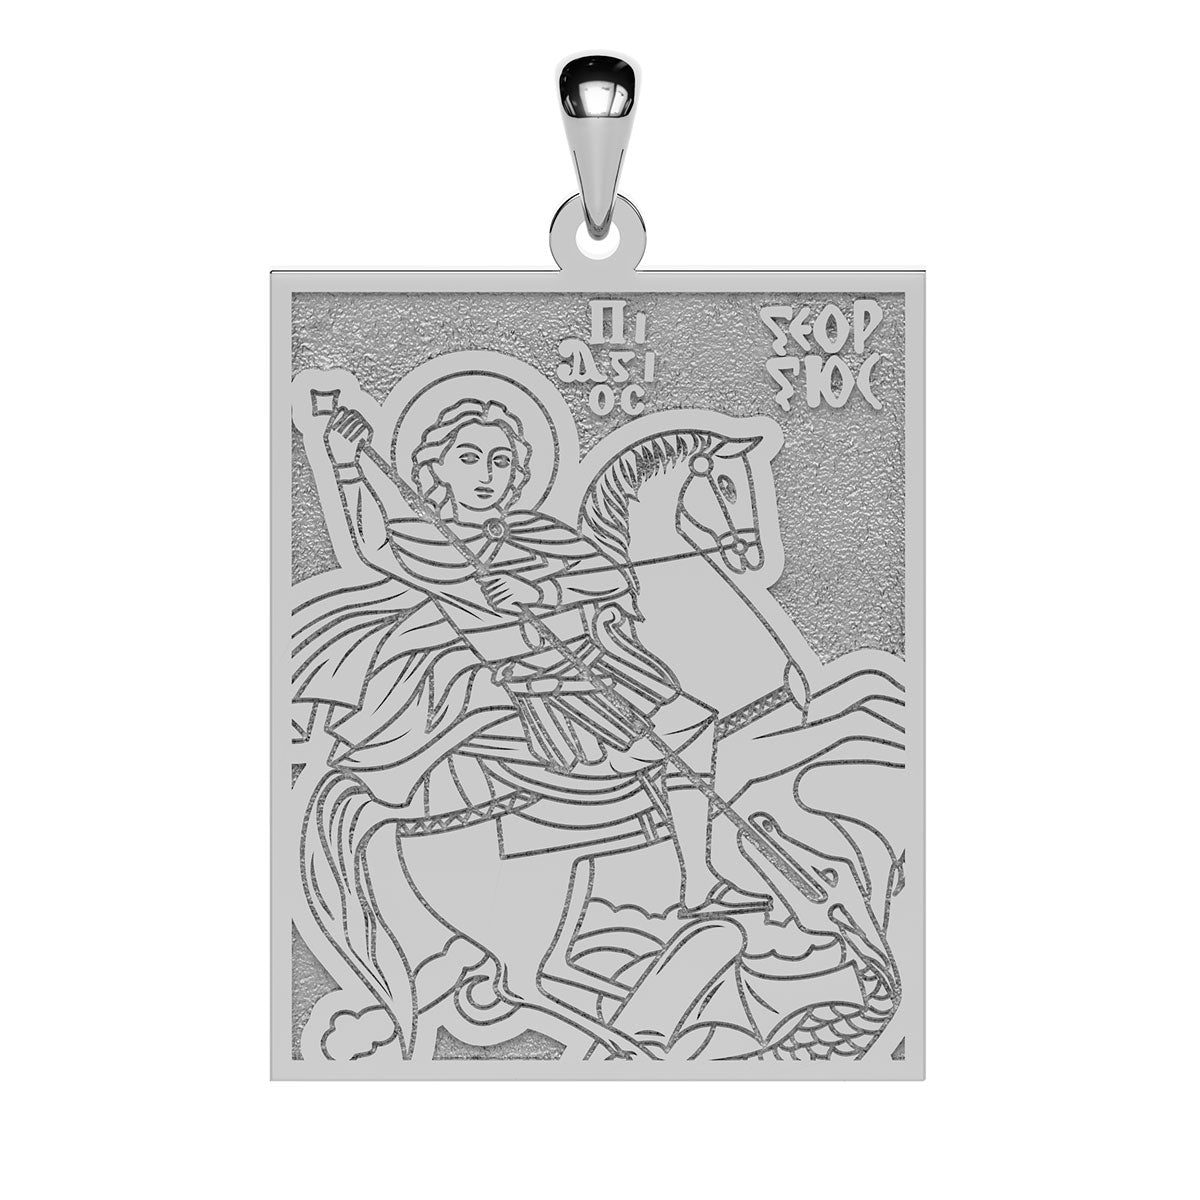 Saint George Coptic Orthodox Icon Tag Medal